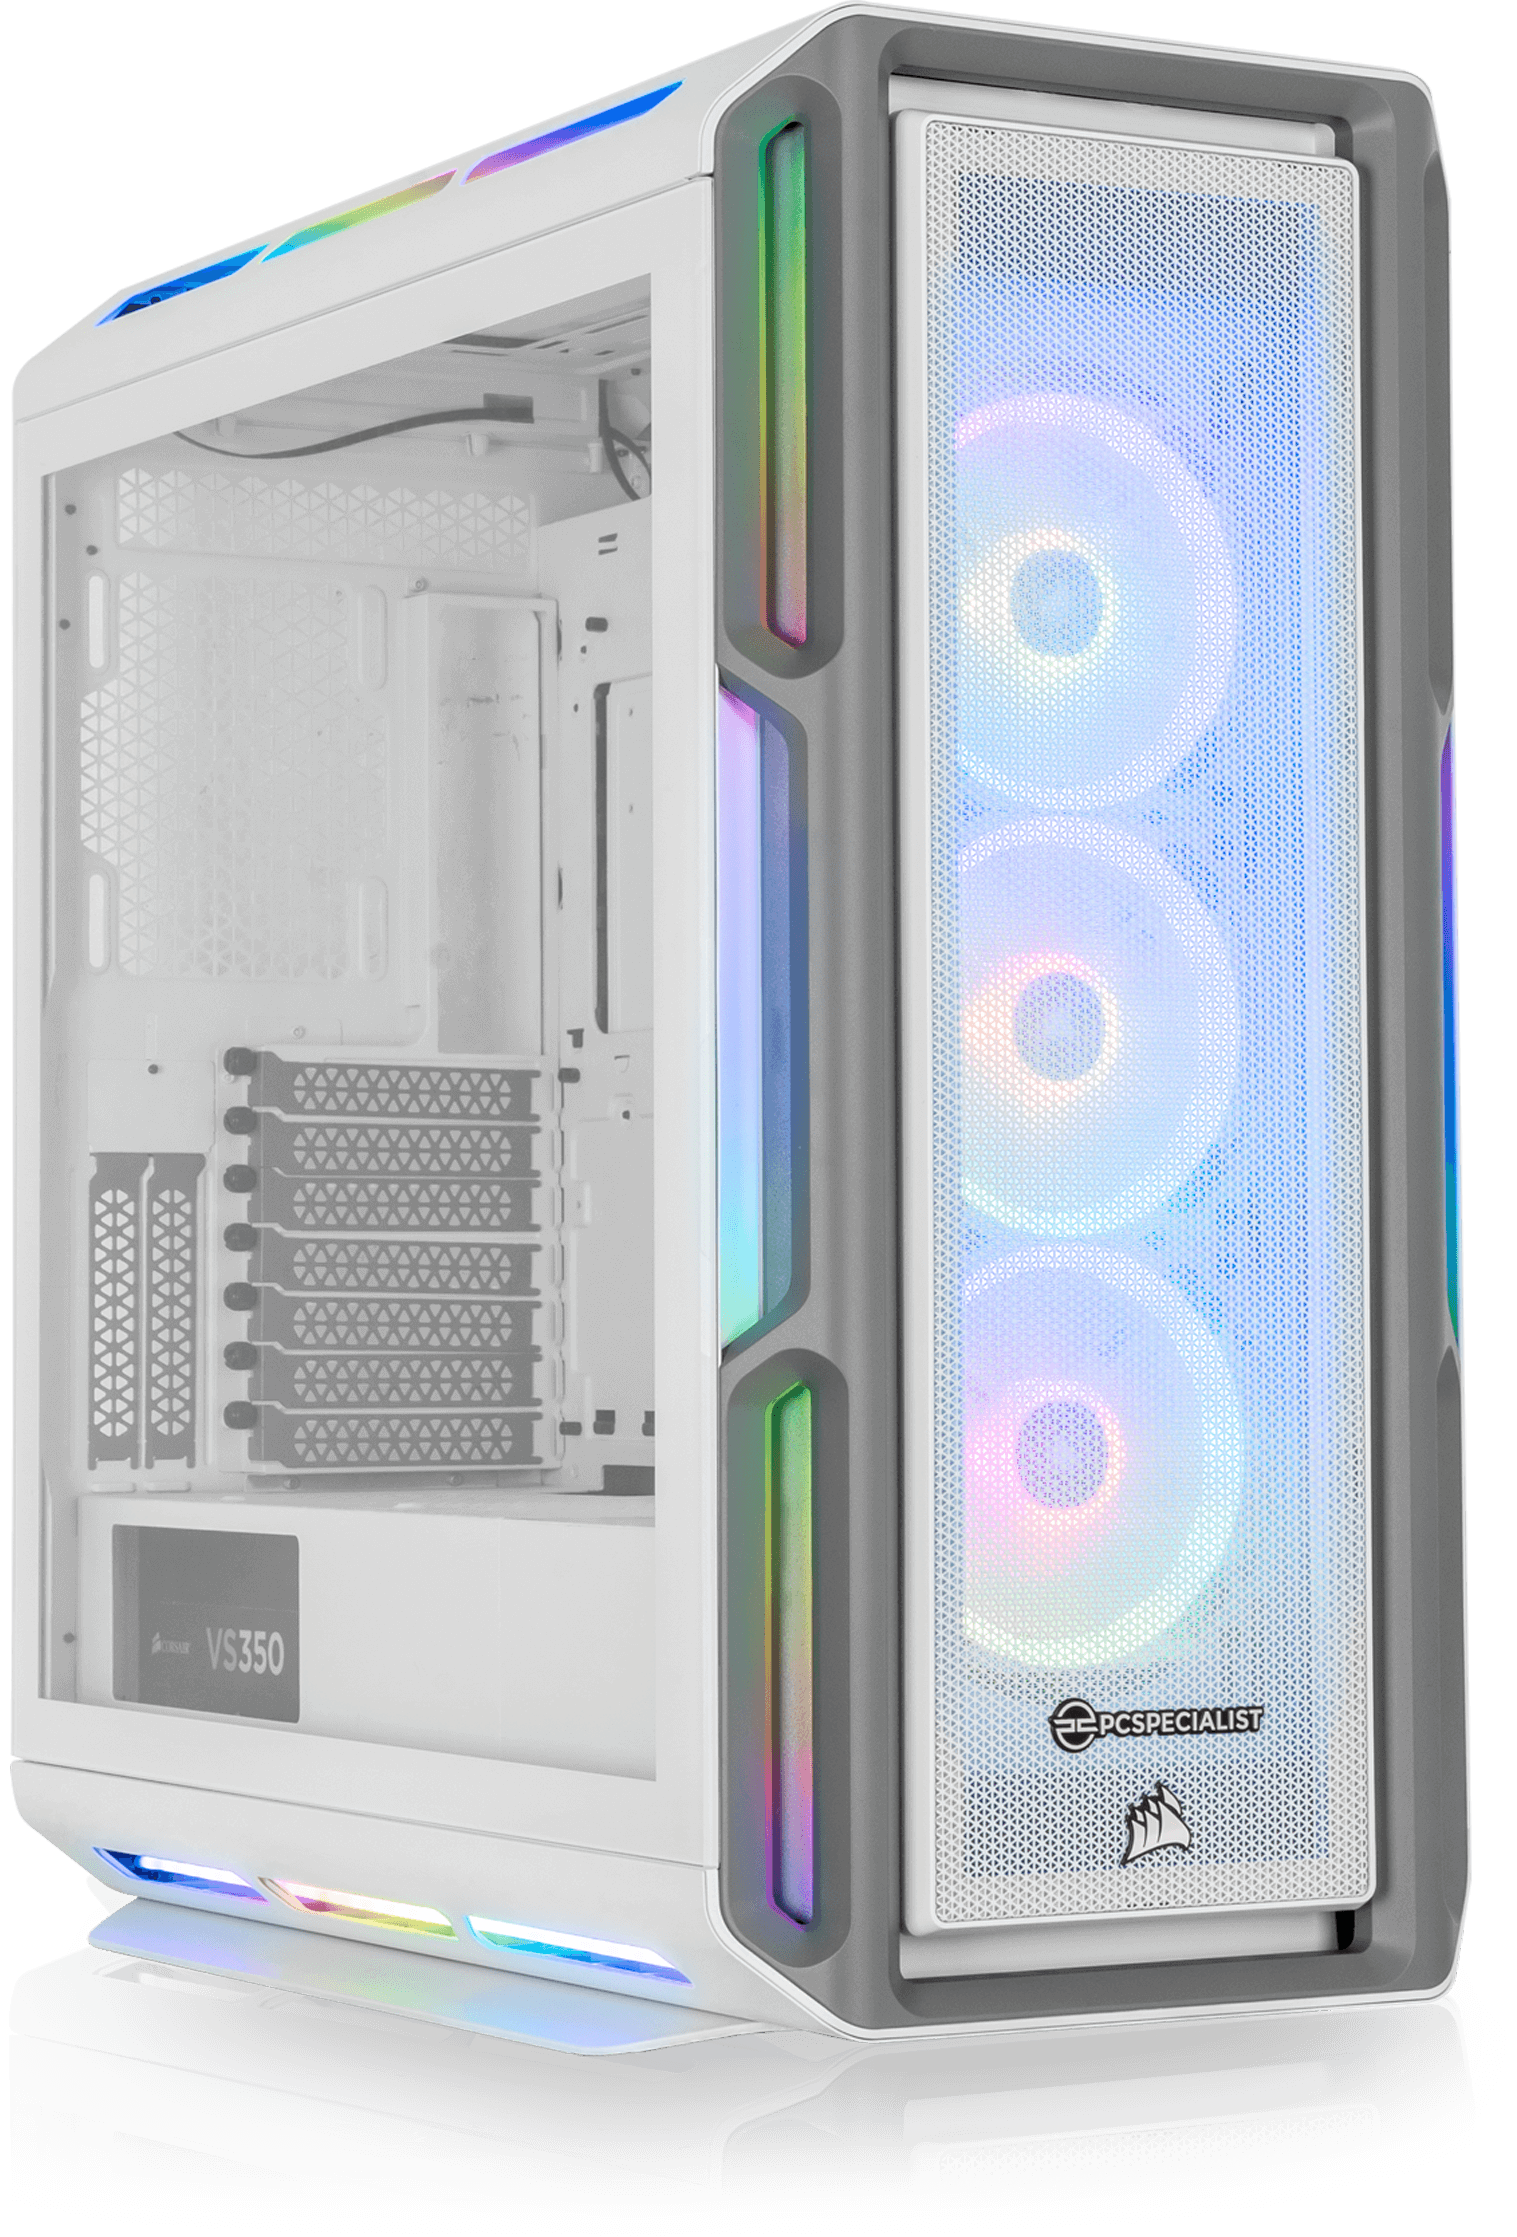 PCSPECIALIST - Konfigurer Luna Ultra White Gaming PC, så den passer til dine